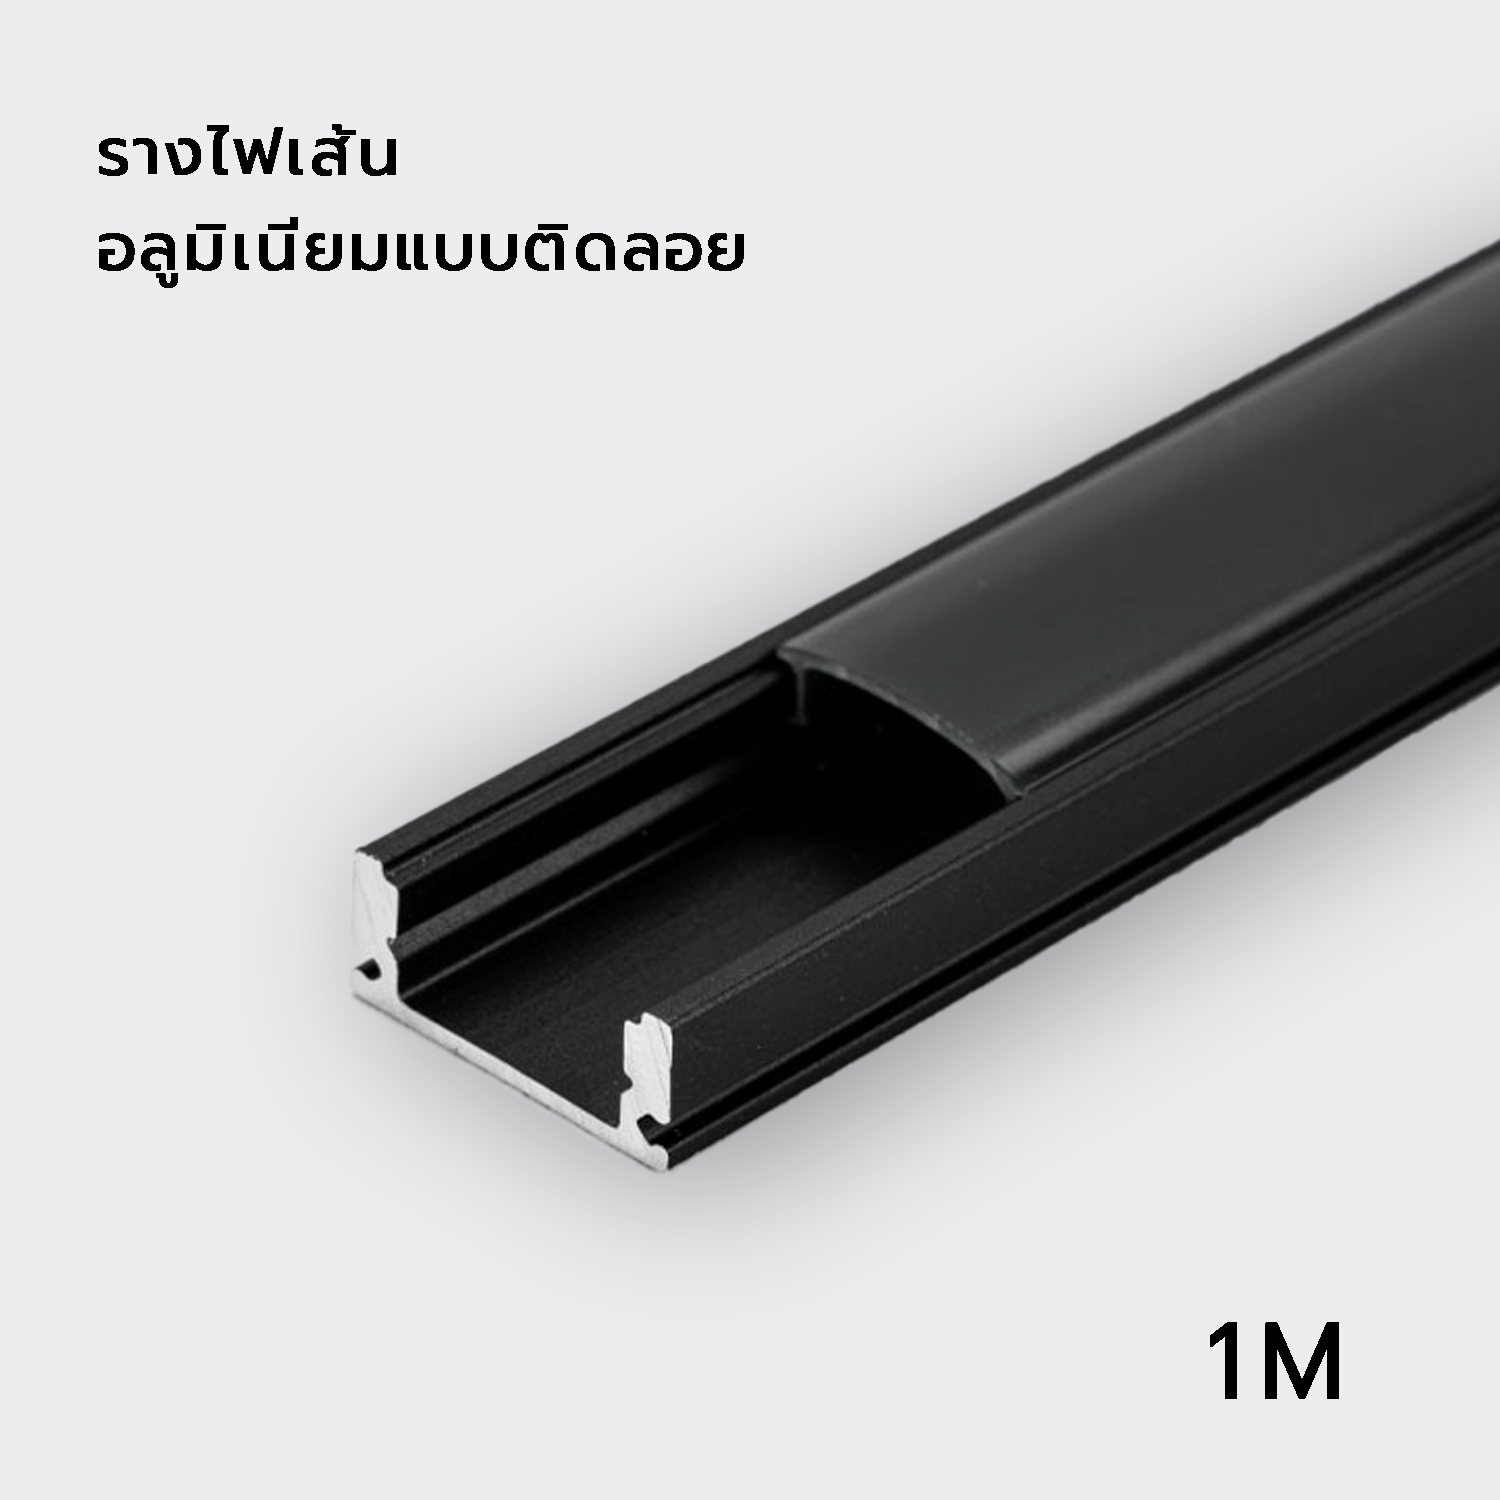 รางไฟเส้นอลูมิเนียมติดลอยสีดำ รุ่น Black series  ความยาว 1 M    รูปที่ 1